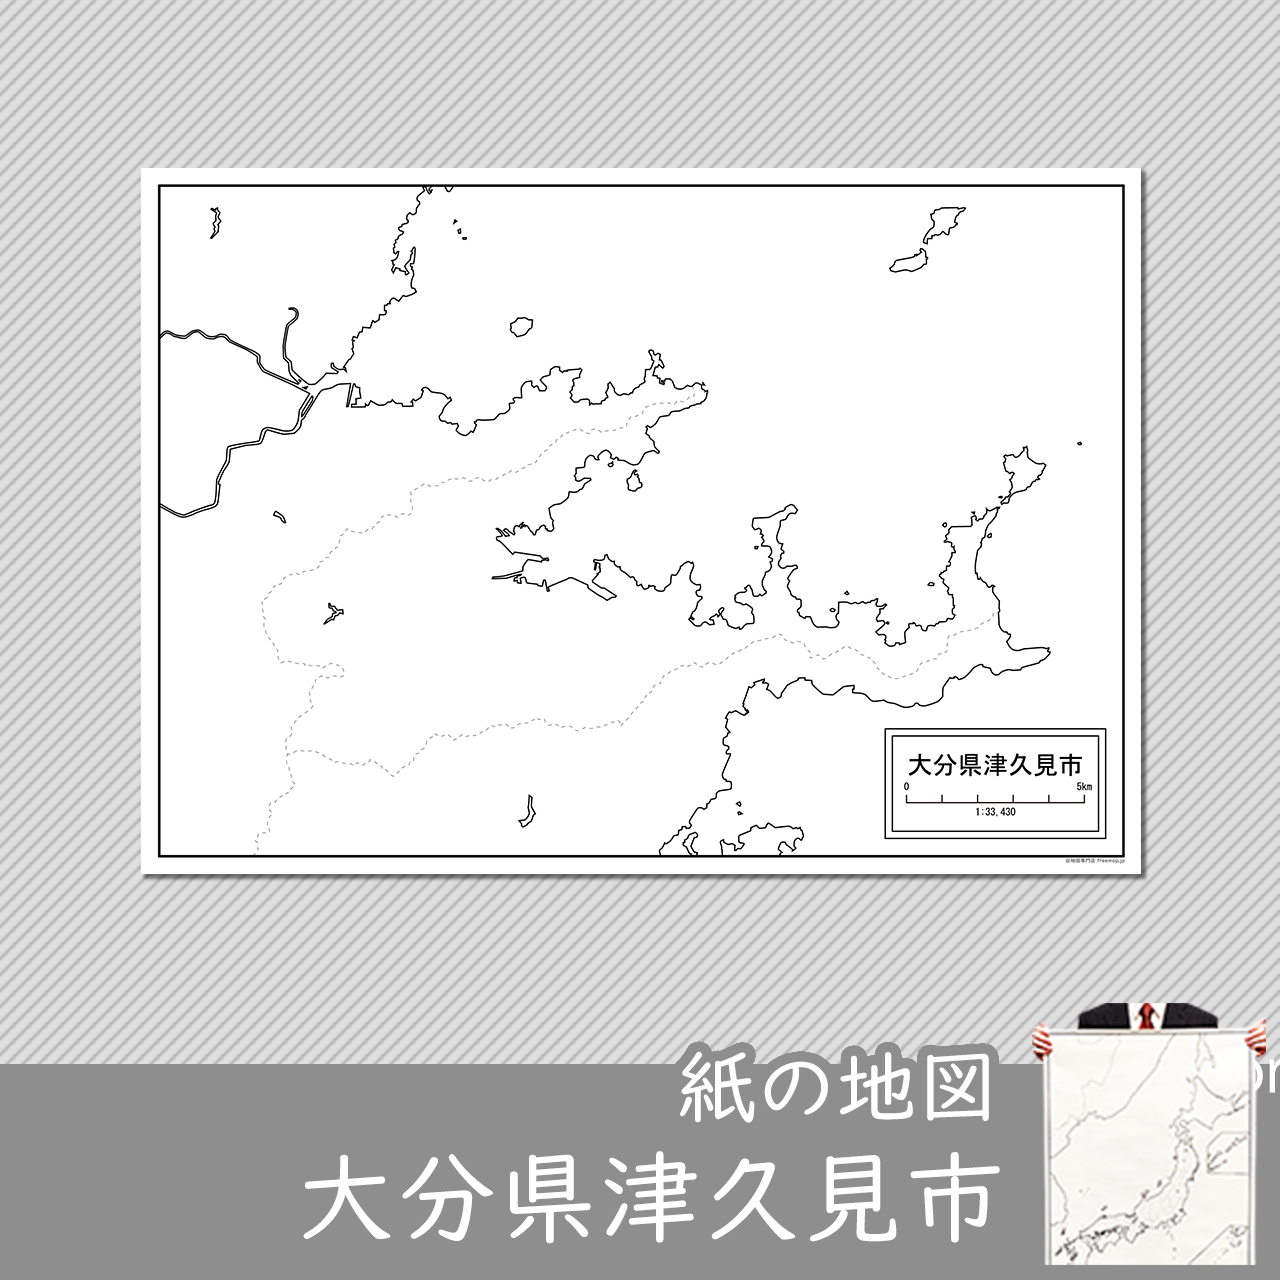 津久見市の紙の白地図のサムネイル